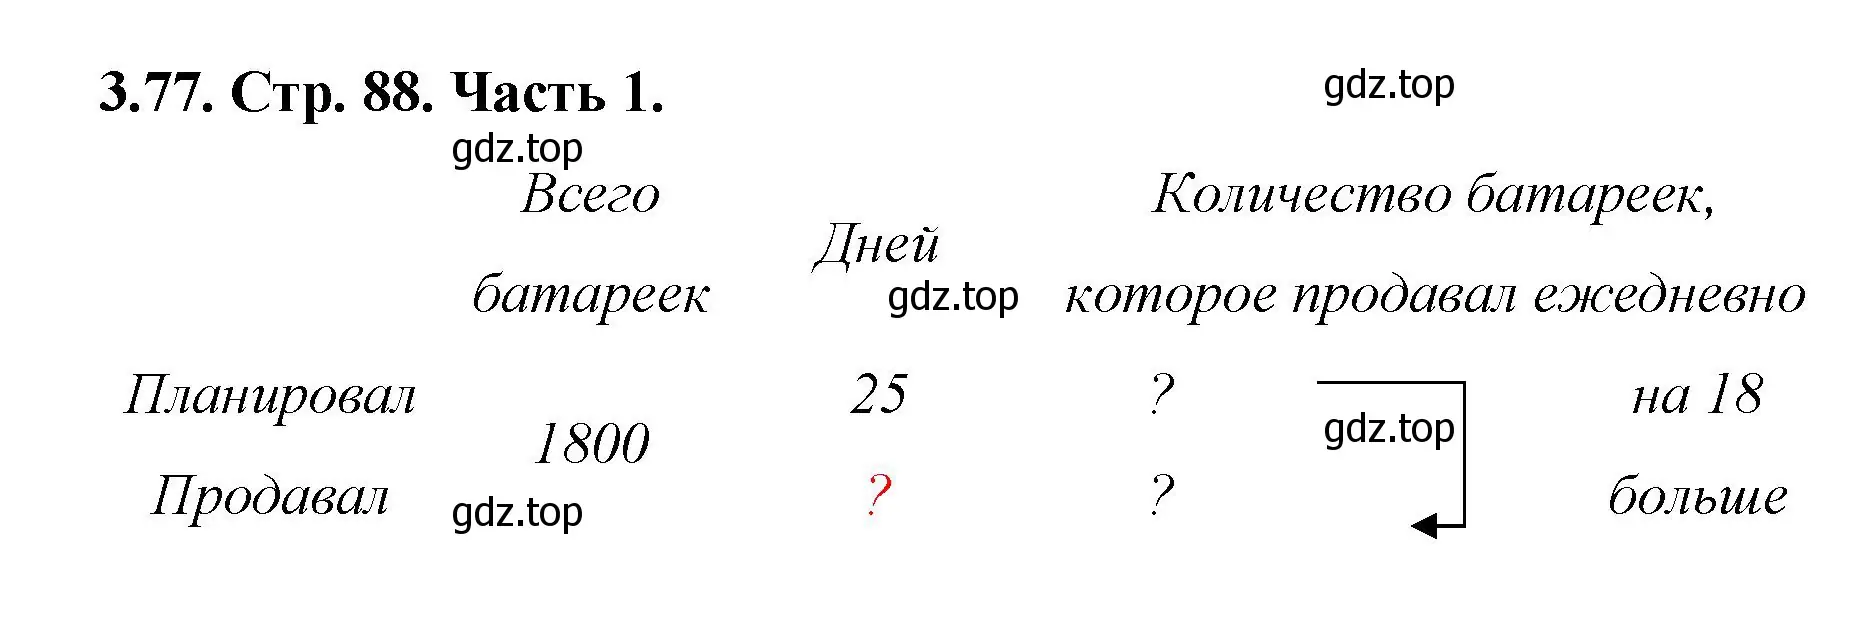 Решение номер 3.77 (страница 88) гдз по математике 5 класс Виленкин, Жохов, учебник 1 часть